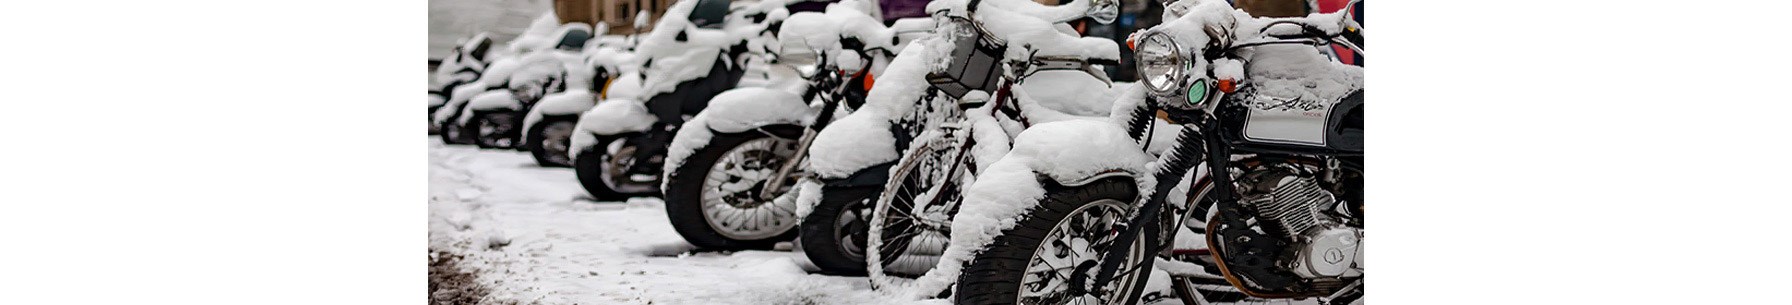 motorbikes in snow